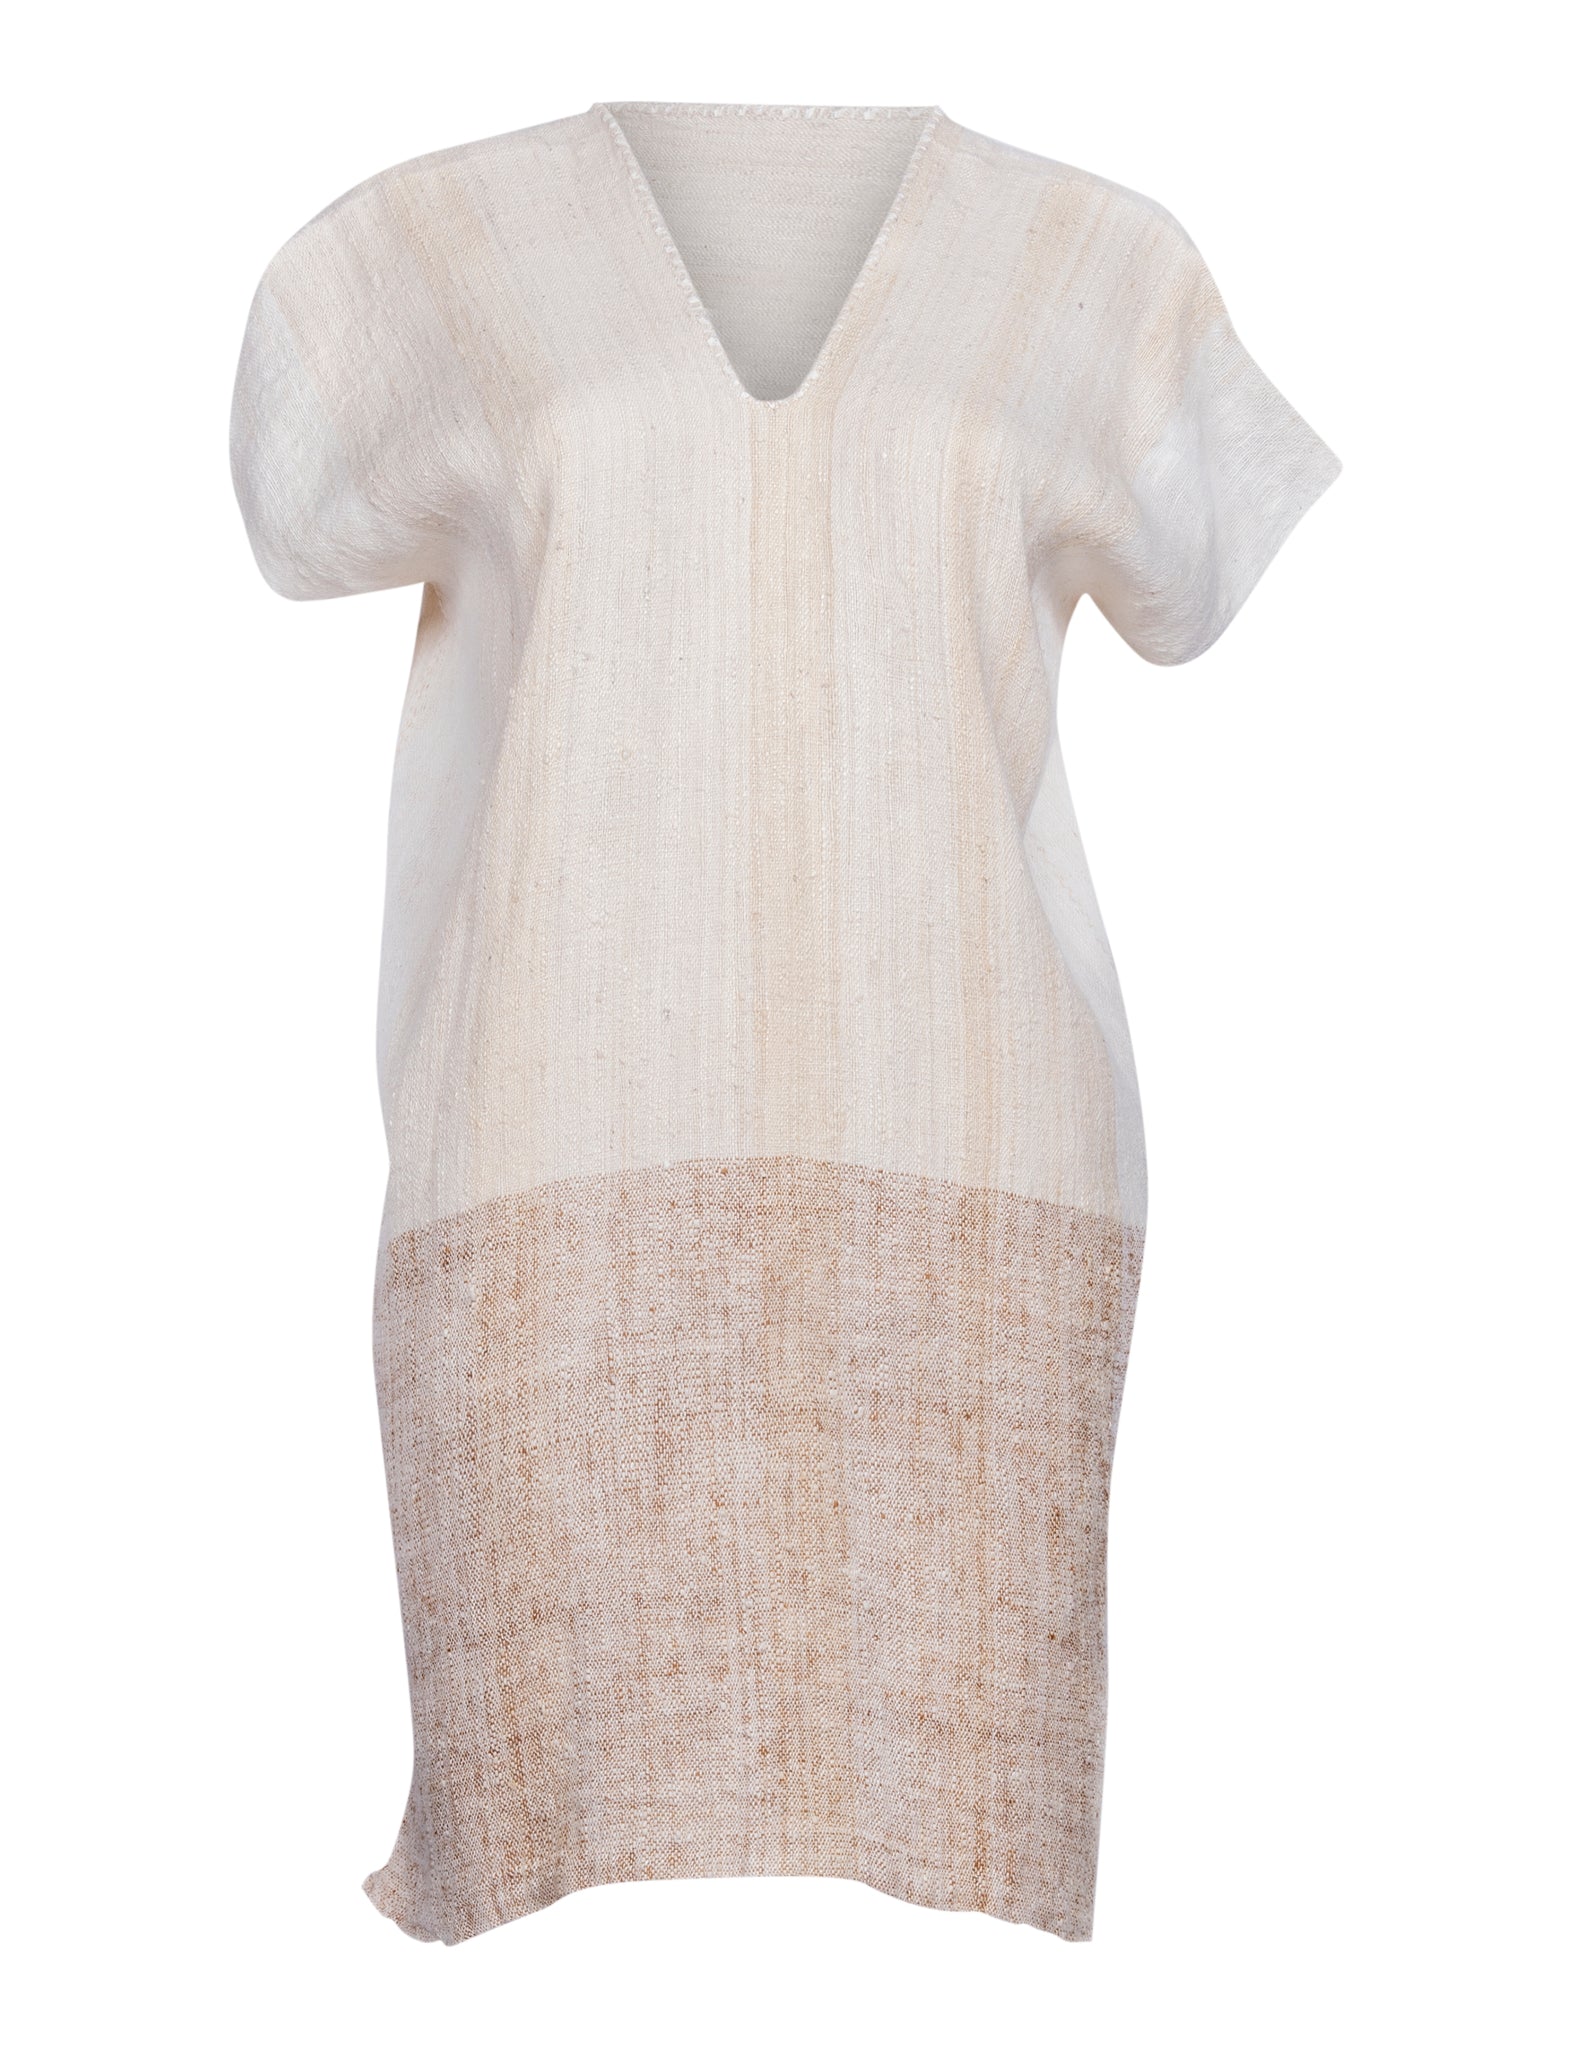 The Artisanal Silk V-Neck Dress in White 2-Toned